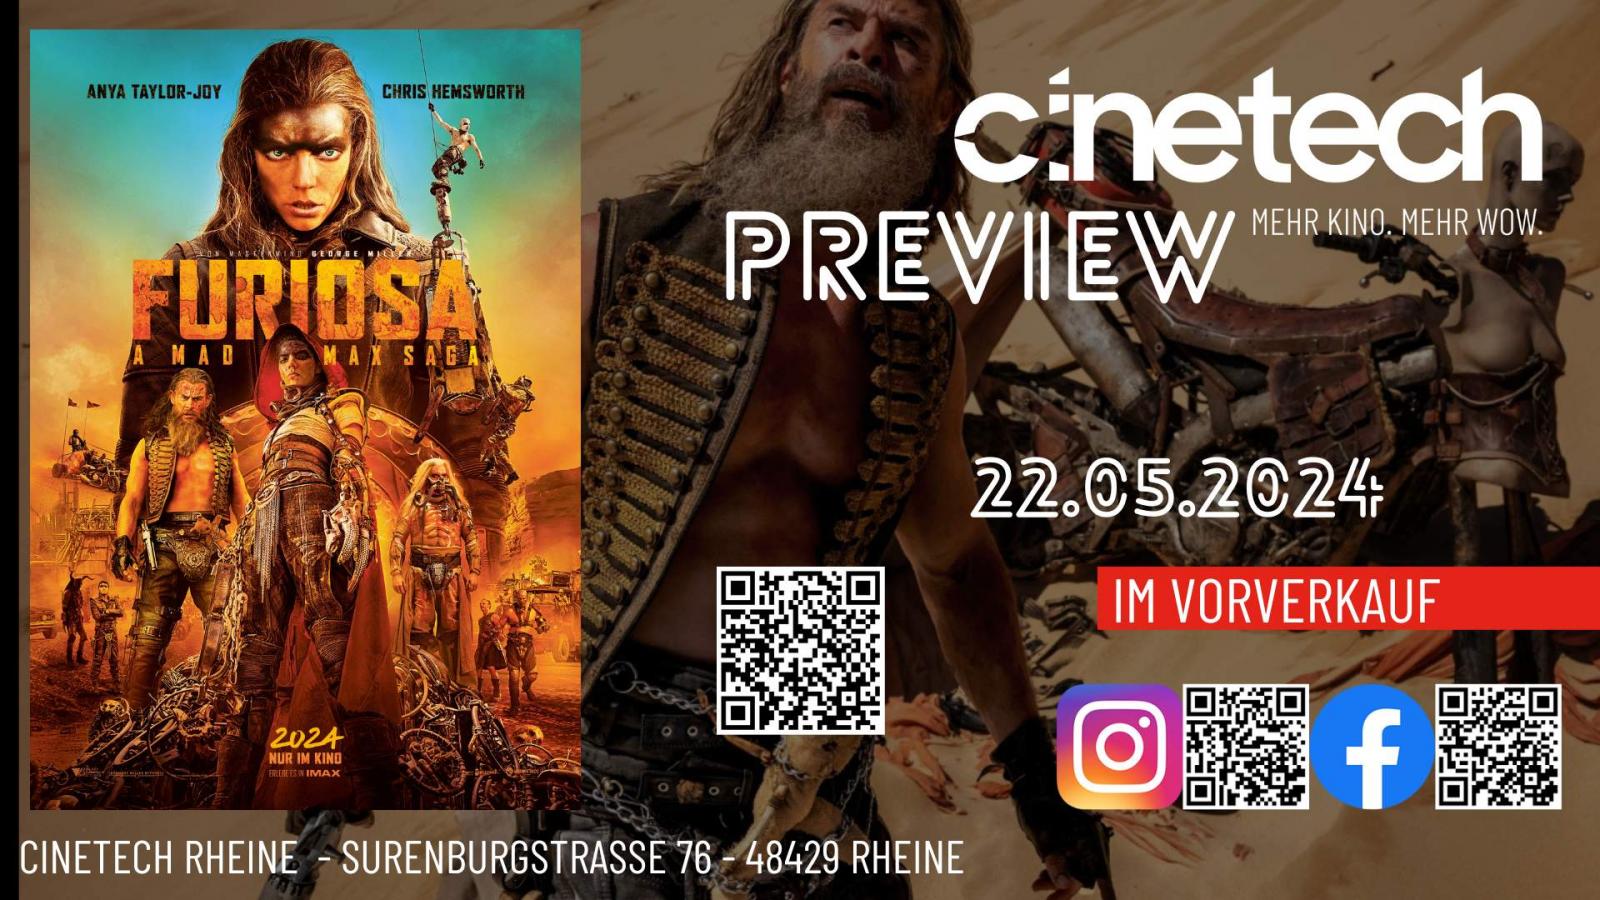 PREVIEW: Furiosa: A Mad Max Saga